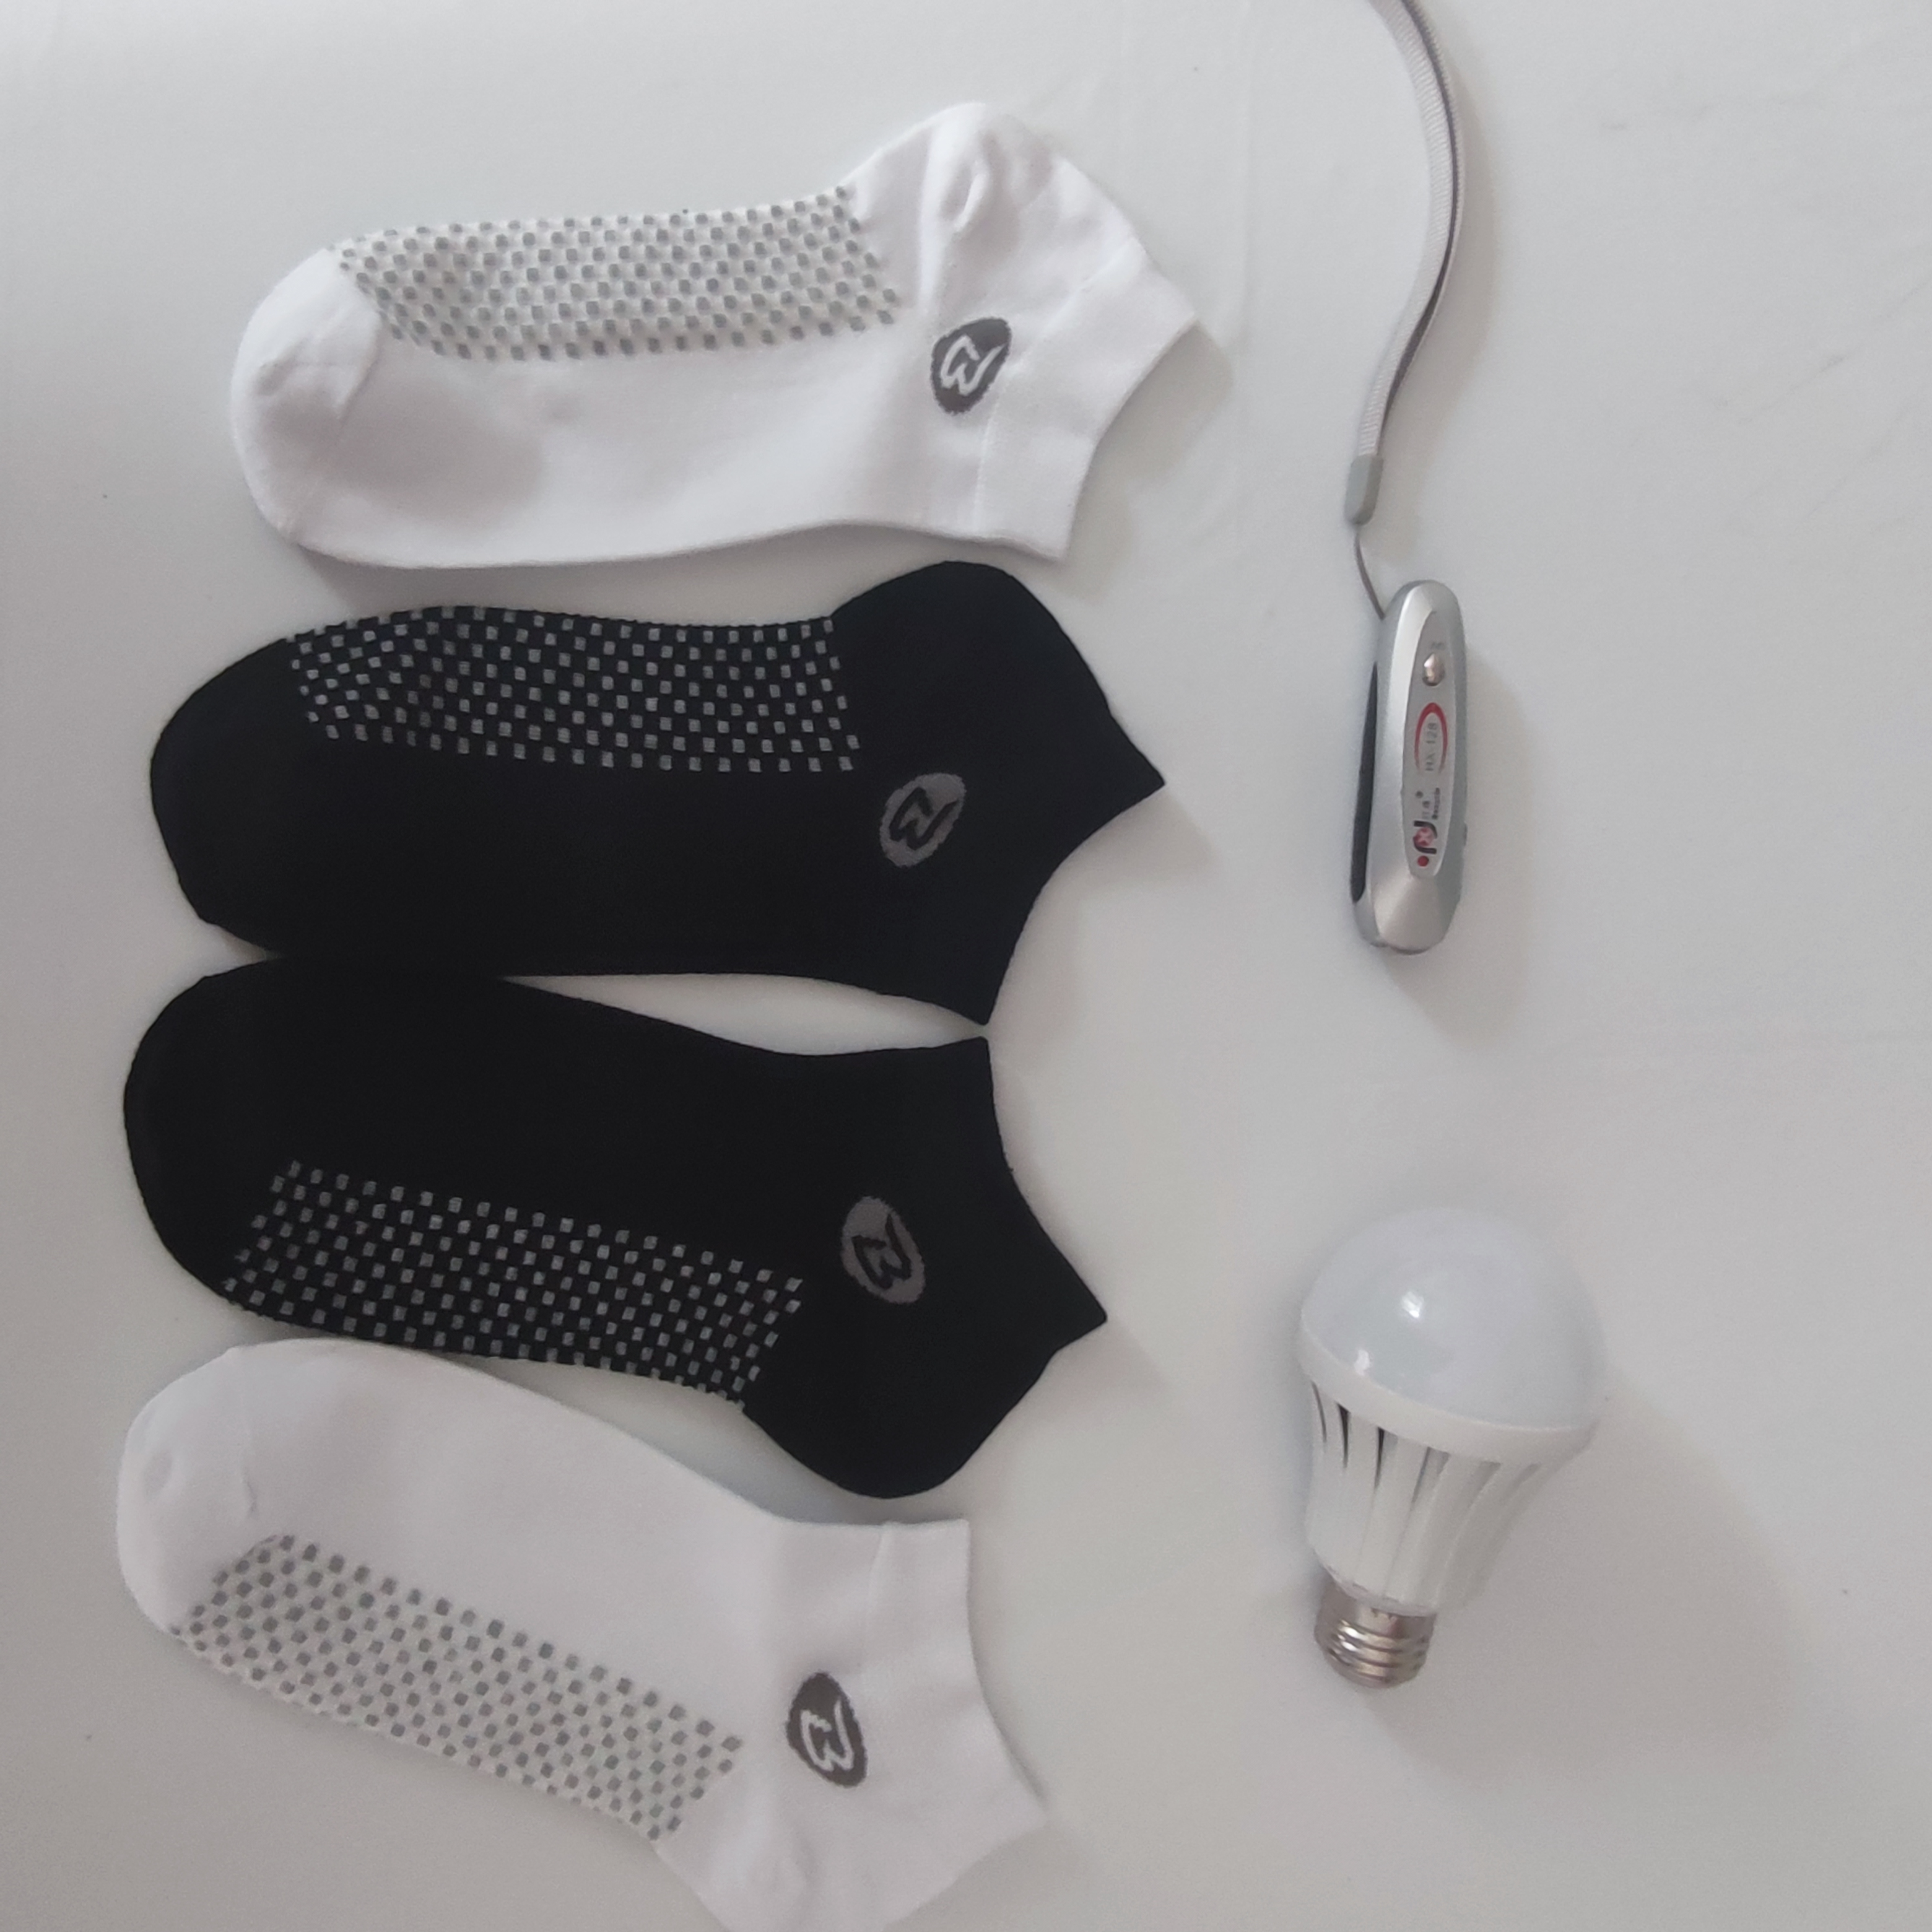 银纤维导电袜新款上市 可以亮灯的袜子 自发热袜子图片